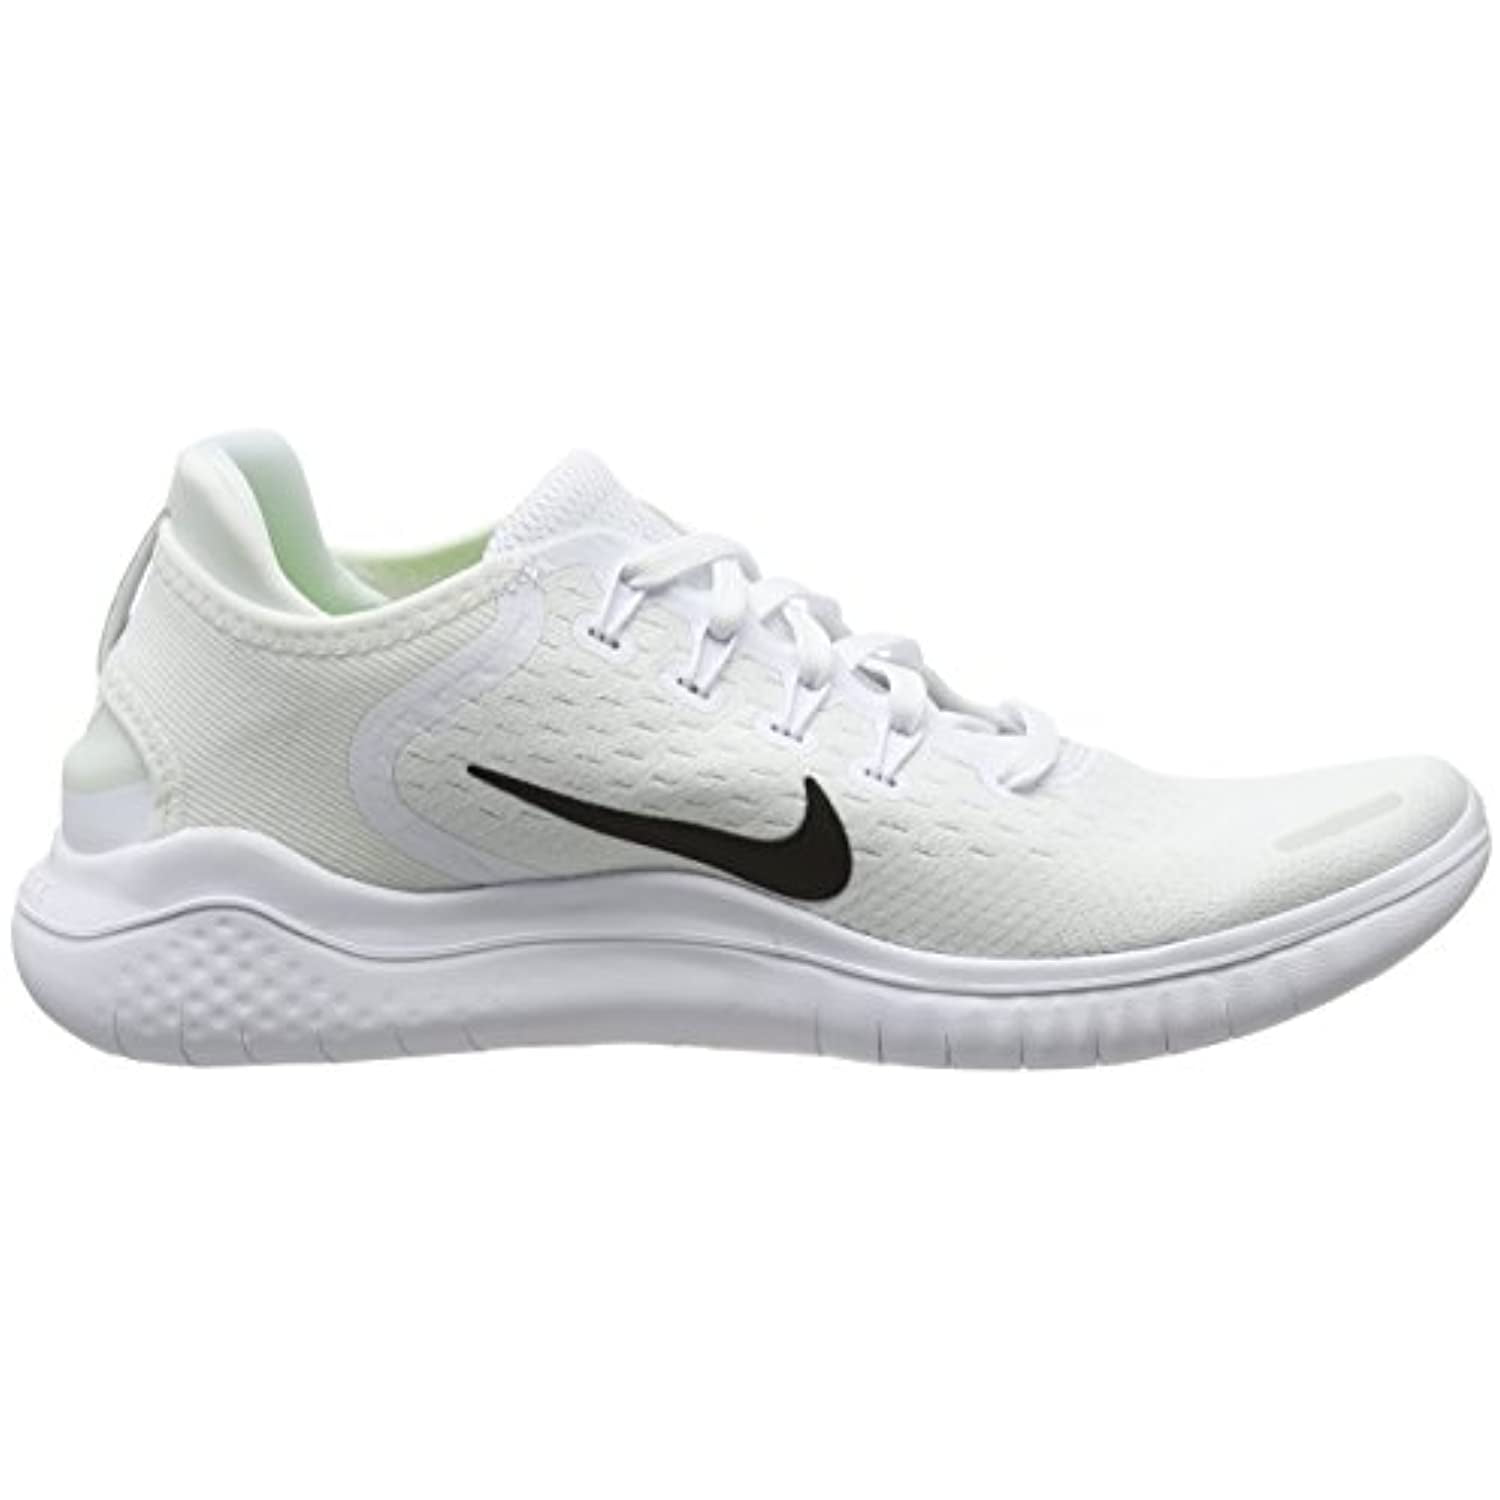 Bonito mezcla Dinkarville Nike Men's Free RN 2018 Running Shoe White/Black Size 8 M US - Walmart.com